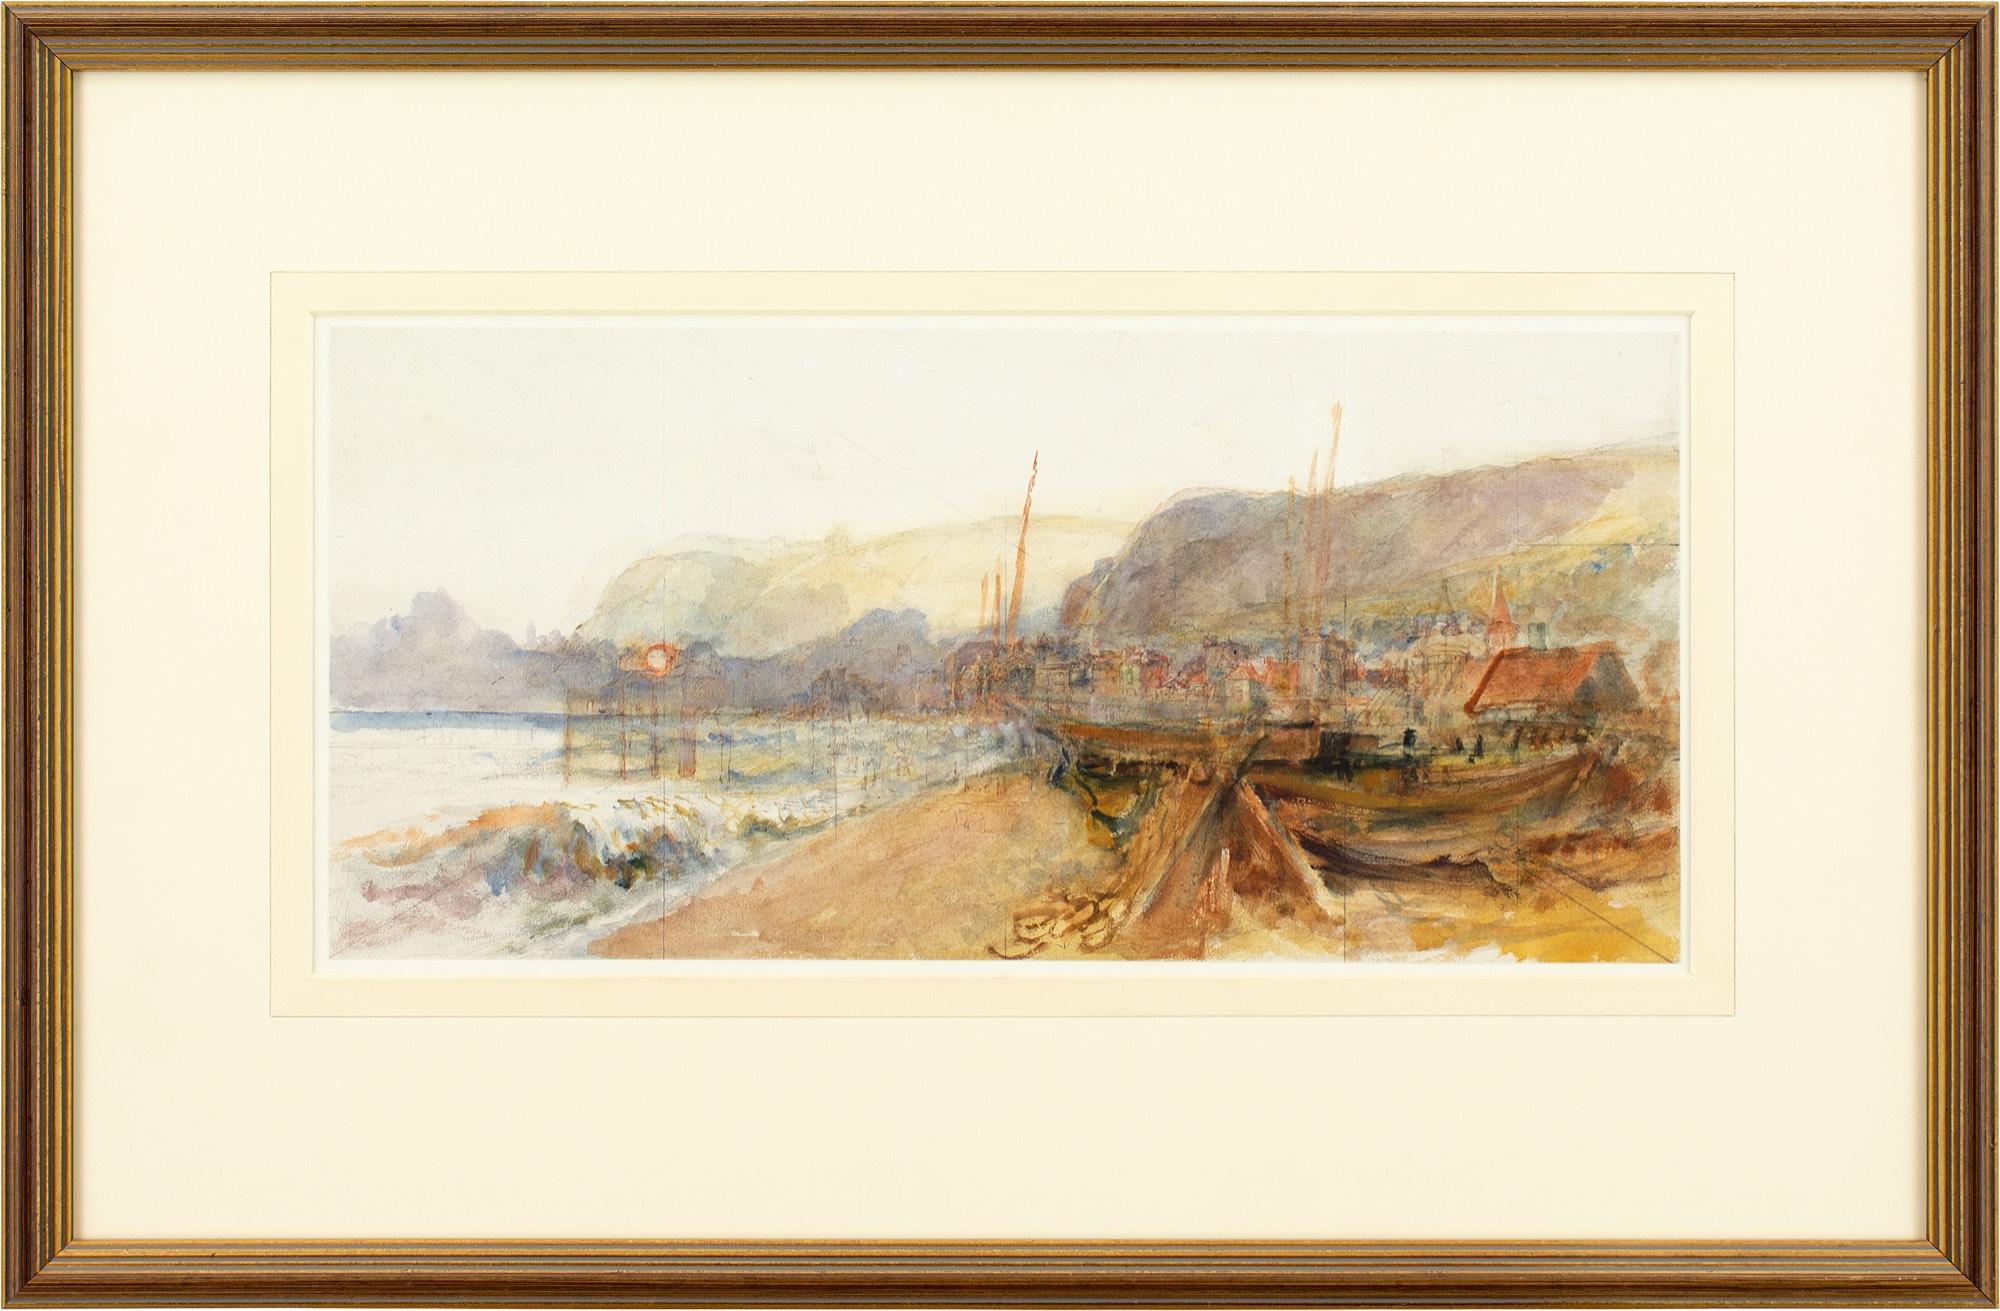 Dieses Aquarell des englischen Künstlers Henry Robertson (1848-1930) aus dem frühen 20. Jahrhundert stellt den Strand von Hastings dar.

Von einem stillgelegten Fischerboot hängen Netze herab, bevor die Gebäude am Strand auftauchen. Die nebligen